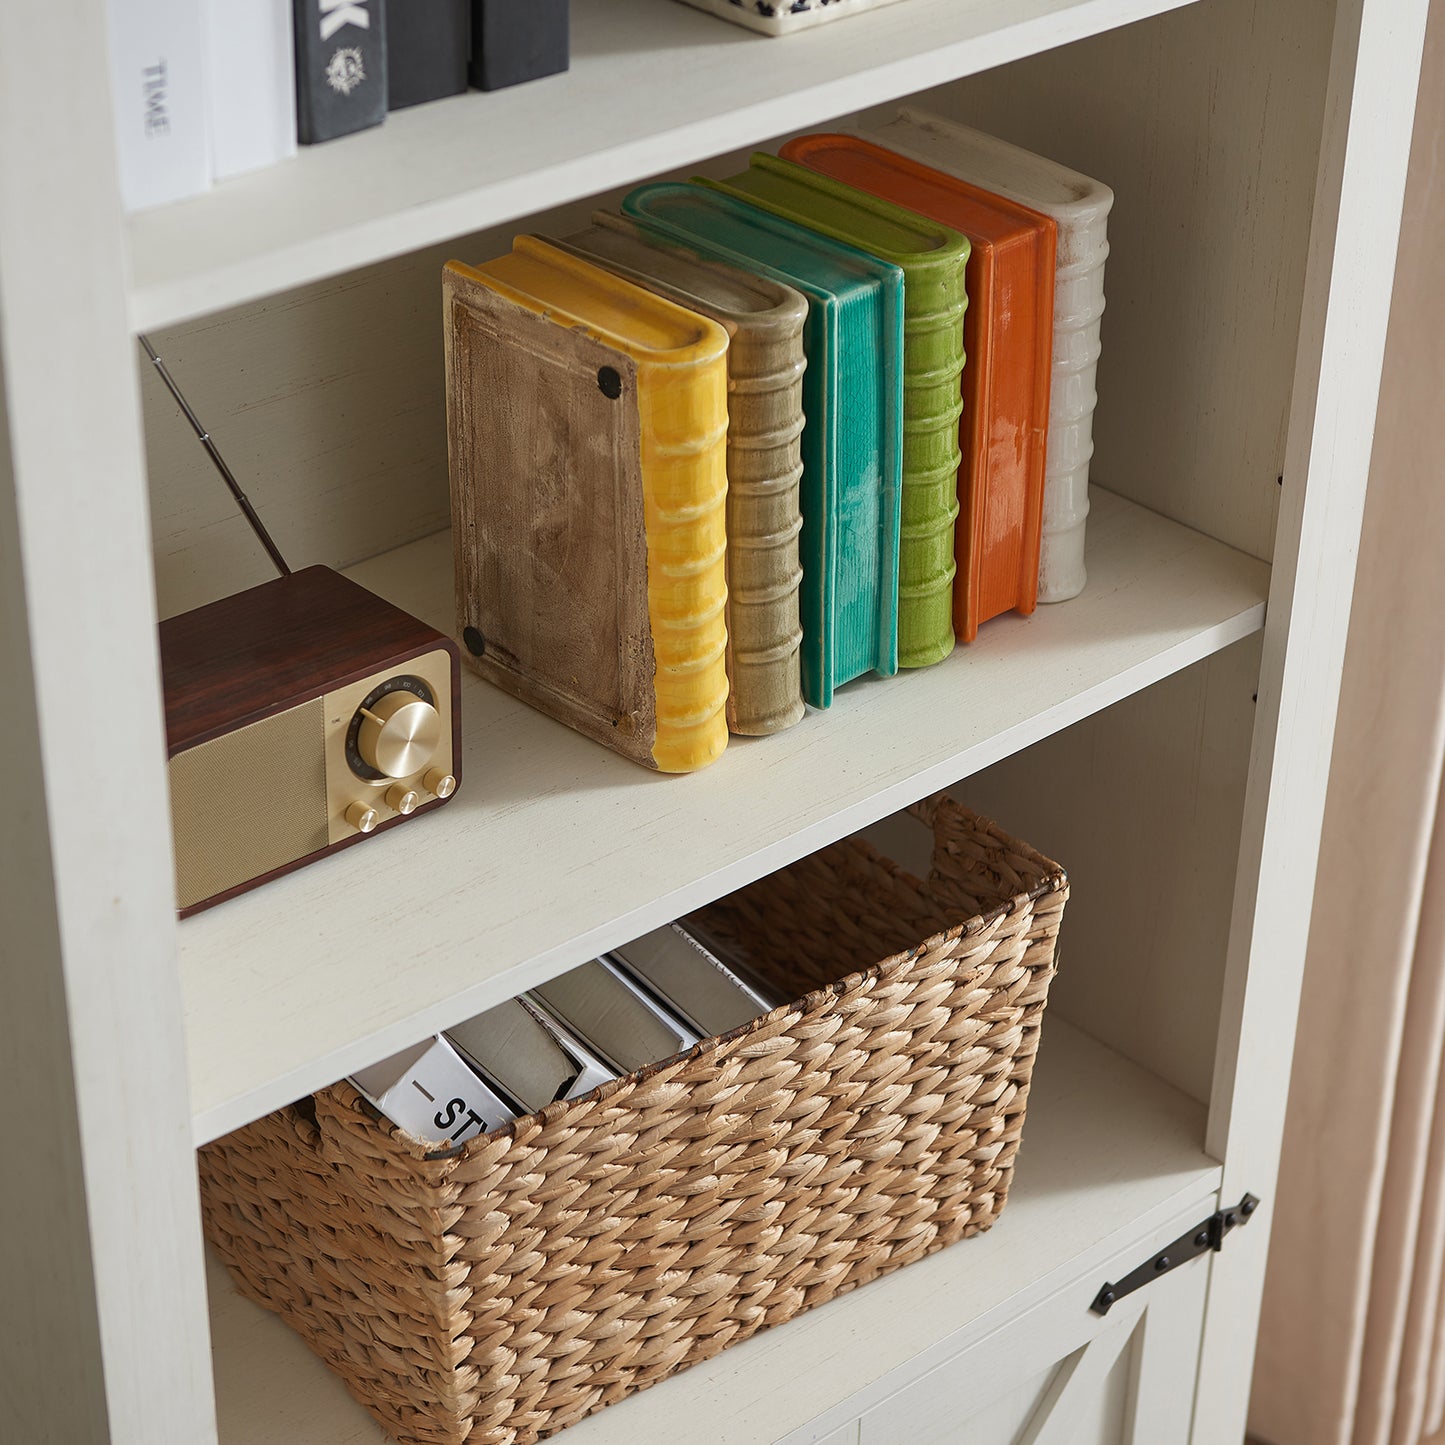 Bret Farmhouse Bookcase Storage Cabinet Rustic White